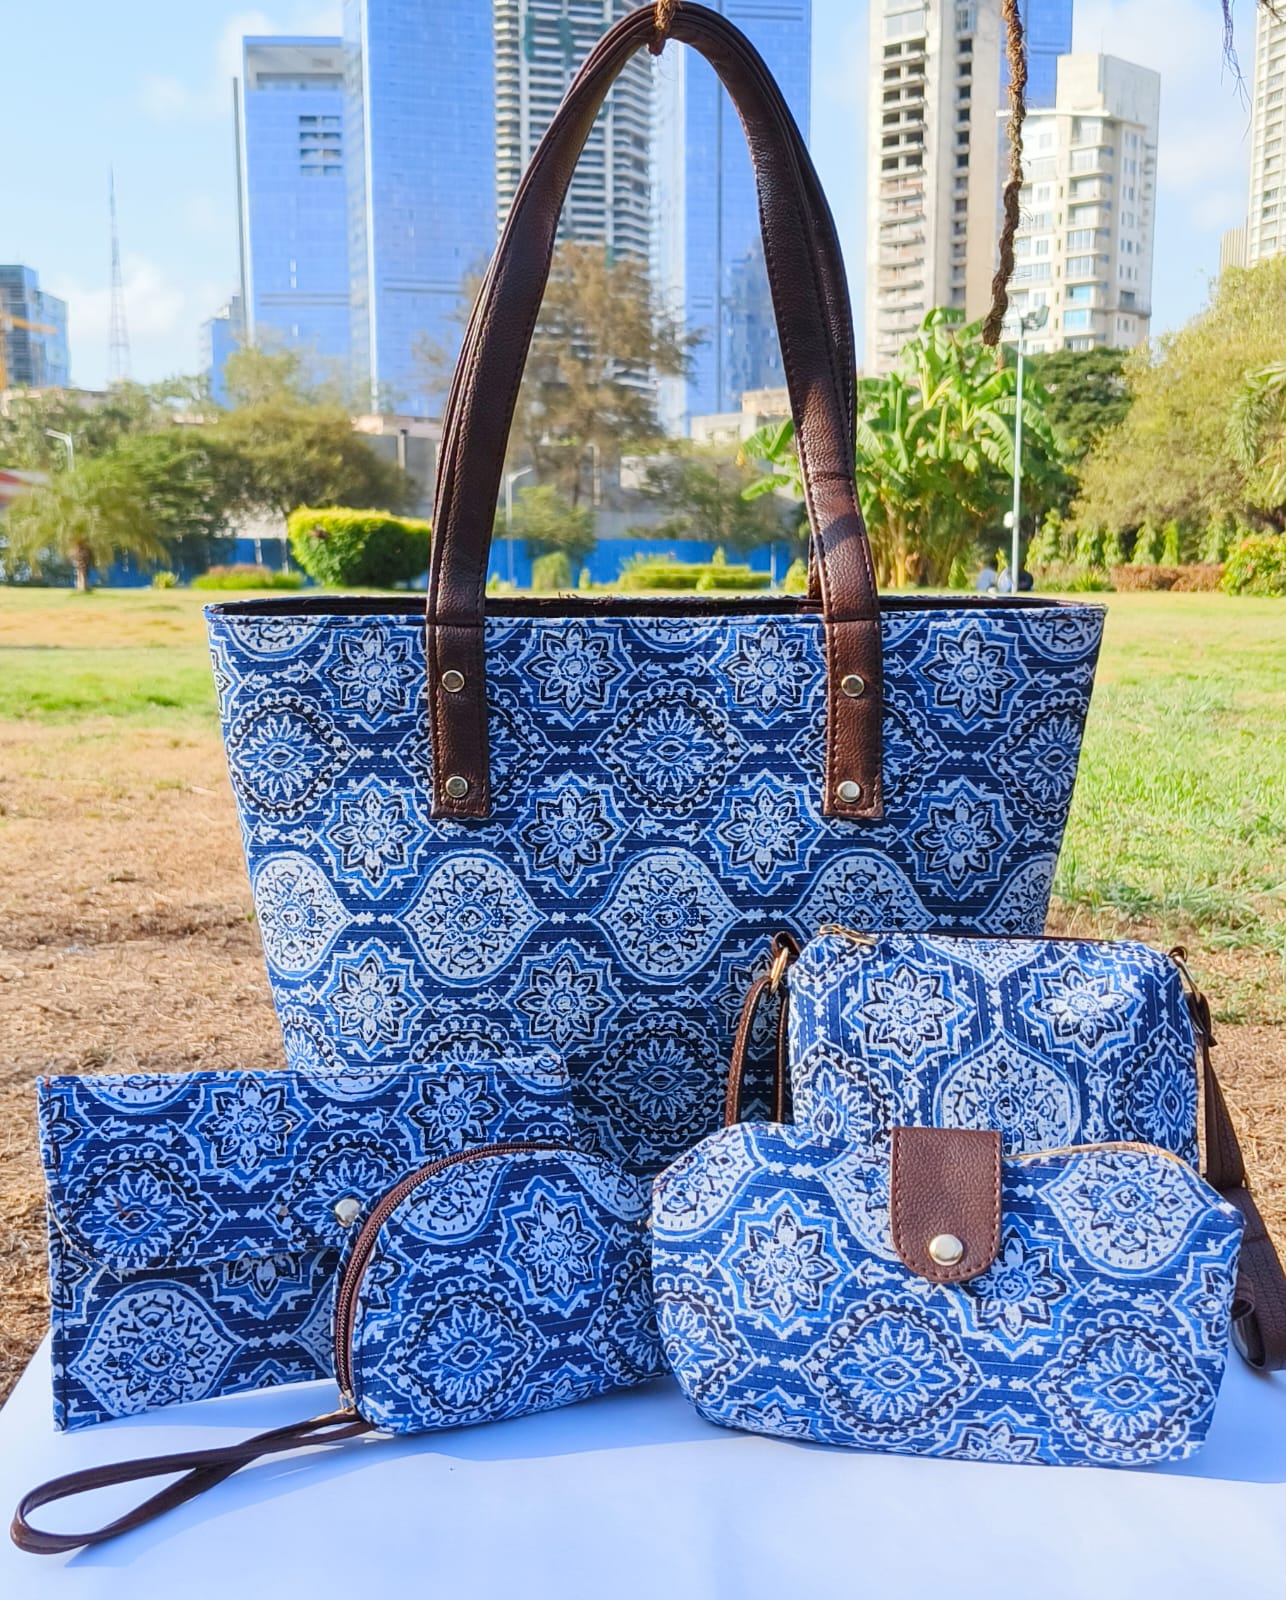 Order online! Blue Ikkat tote bag - CraftsBite, Pune